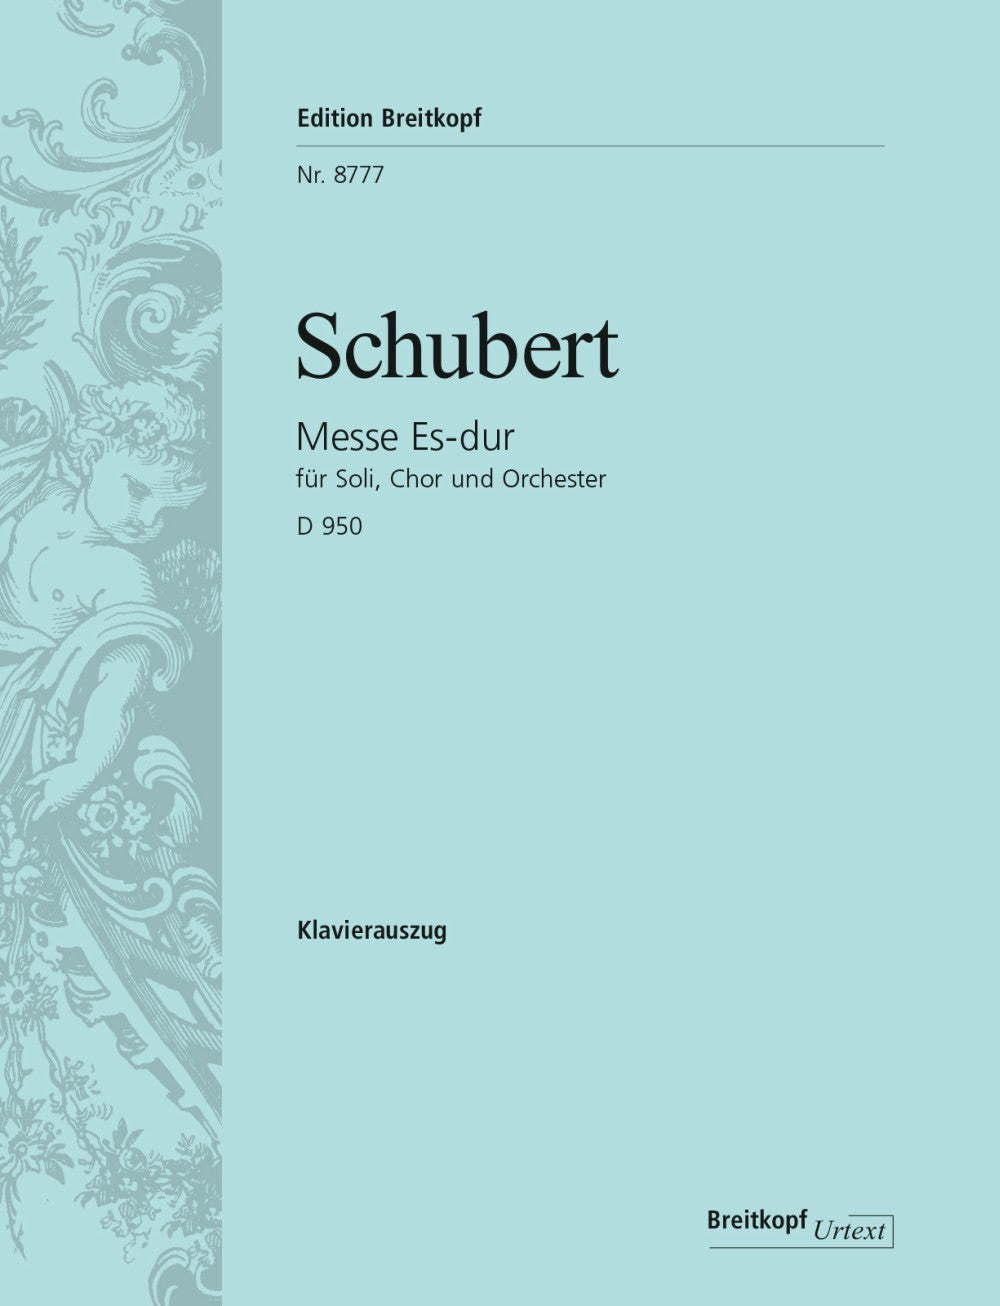 Schubert Mass in E flat major D 950 Vocal Score